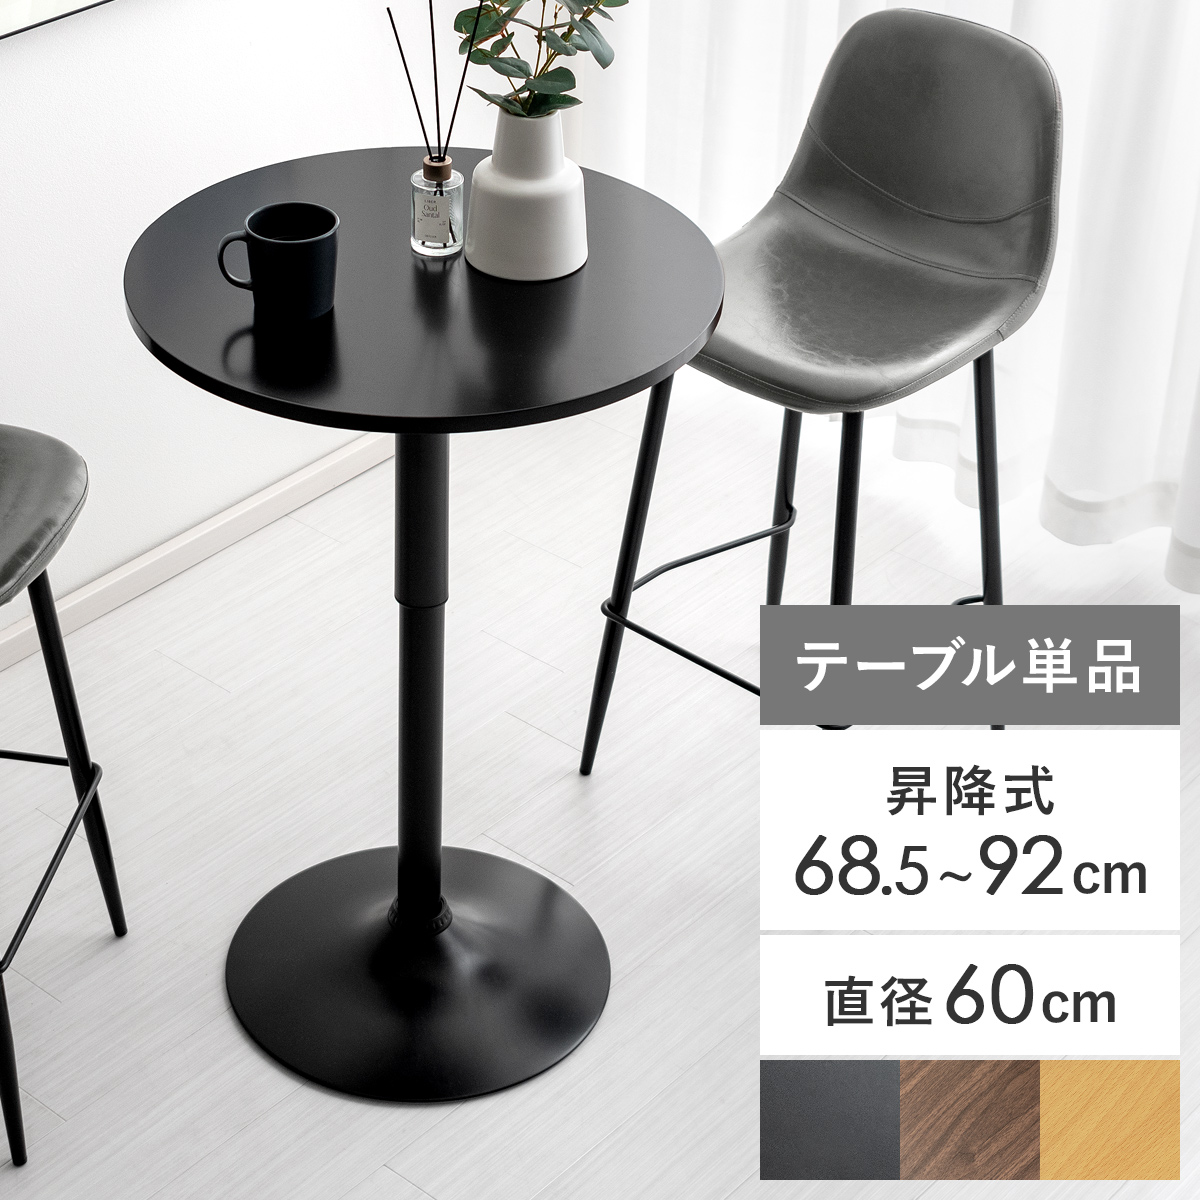 昇降式カフェテーブル(高さ68.5〜92cm)丸型 【公式】 エア・リゾーム インテリア・家具通販